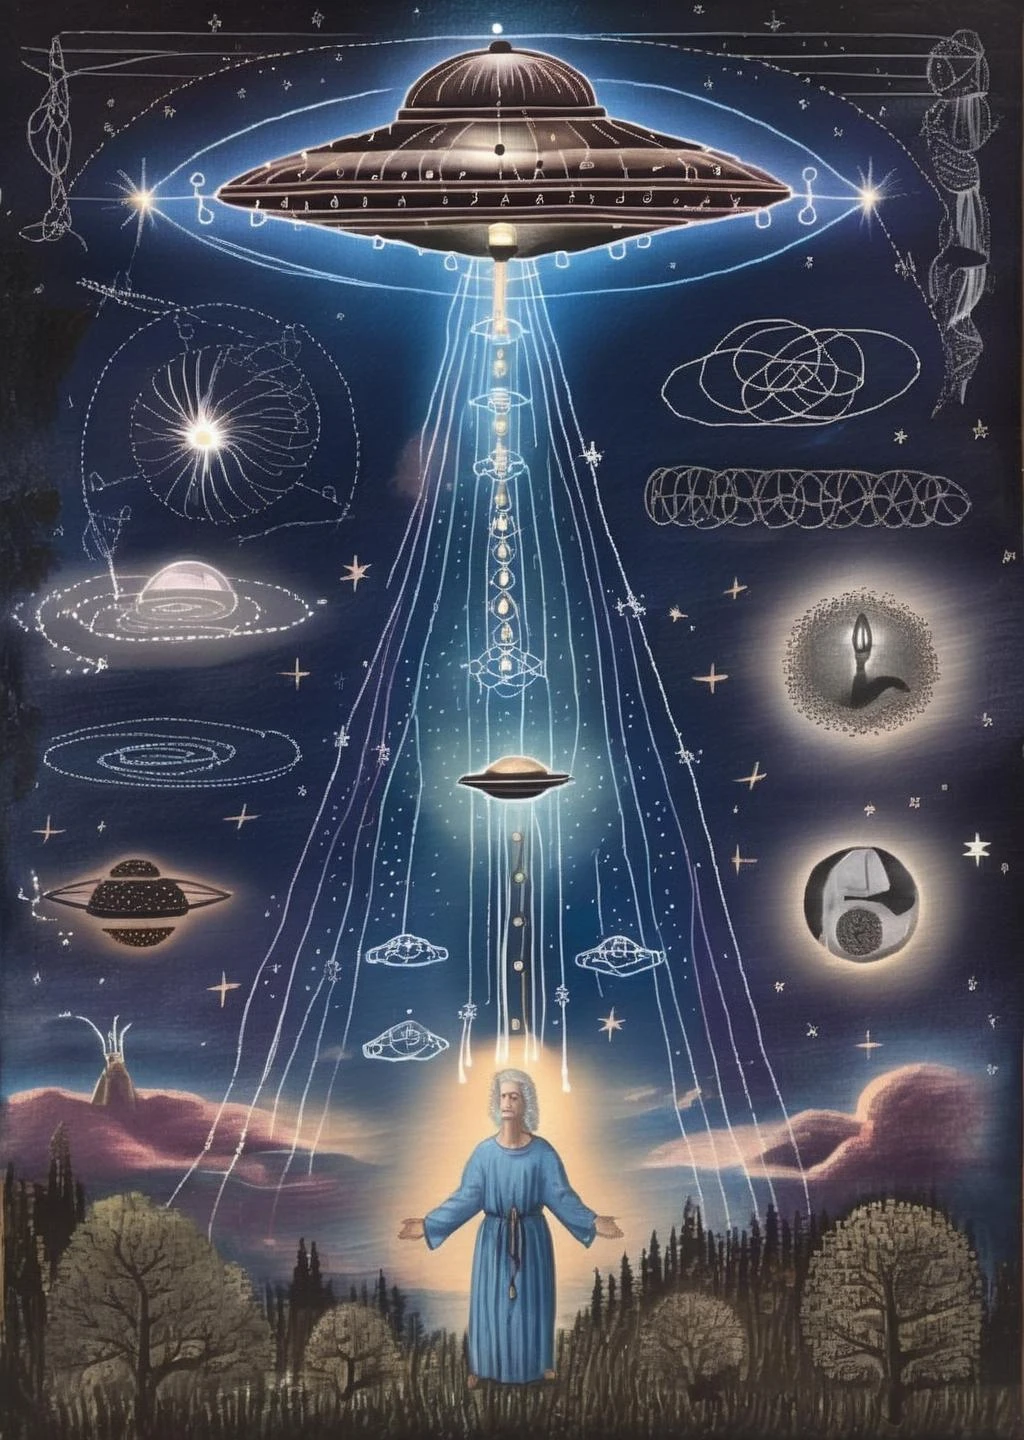 神秘星光: 不明飞行物发出空灵的光束，在夜空中刻下宇宙的启示, 神秘主义与恒星光芒交织.